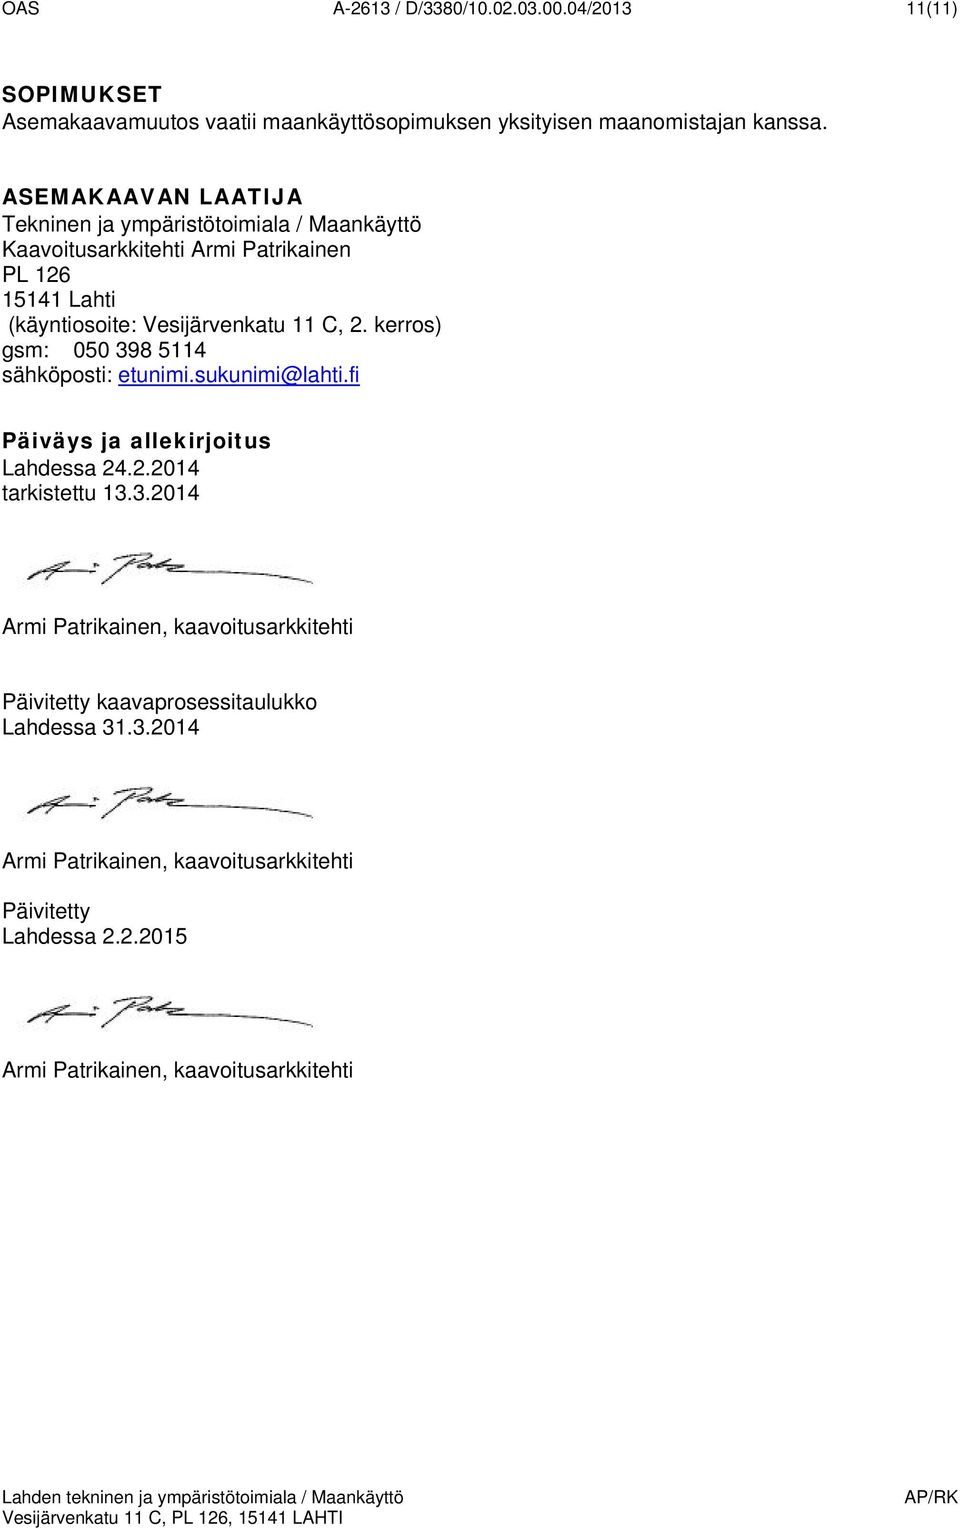 2. kerrs) gsm: 050 398 5114 sähköpsti: etunimi.sukunimi@lahti.fi Päiväys ja allekirjitus Lahdessa 24.2.2014 tarkistettu 13.3.2014 Armi Patrikainen, kaavitusarkkitehti Päivitetty kaavaprsessitaulukk Lahdessa 31.